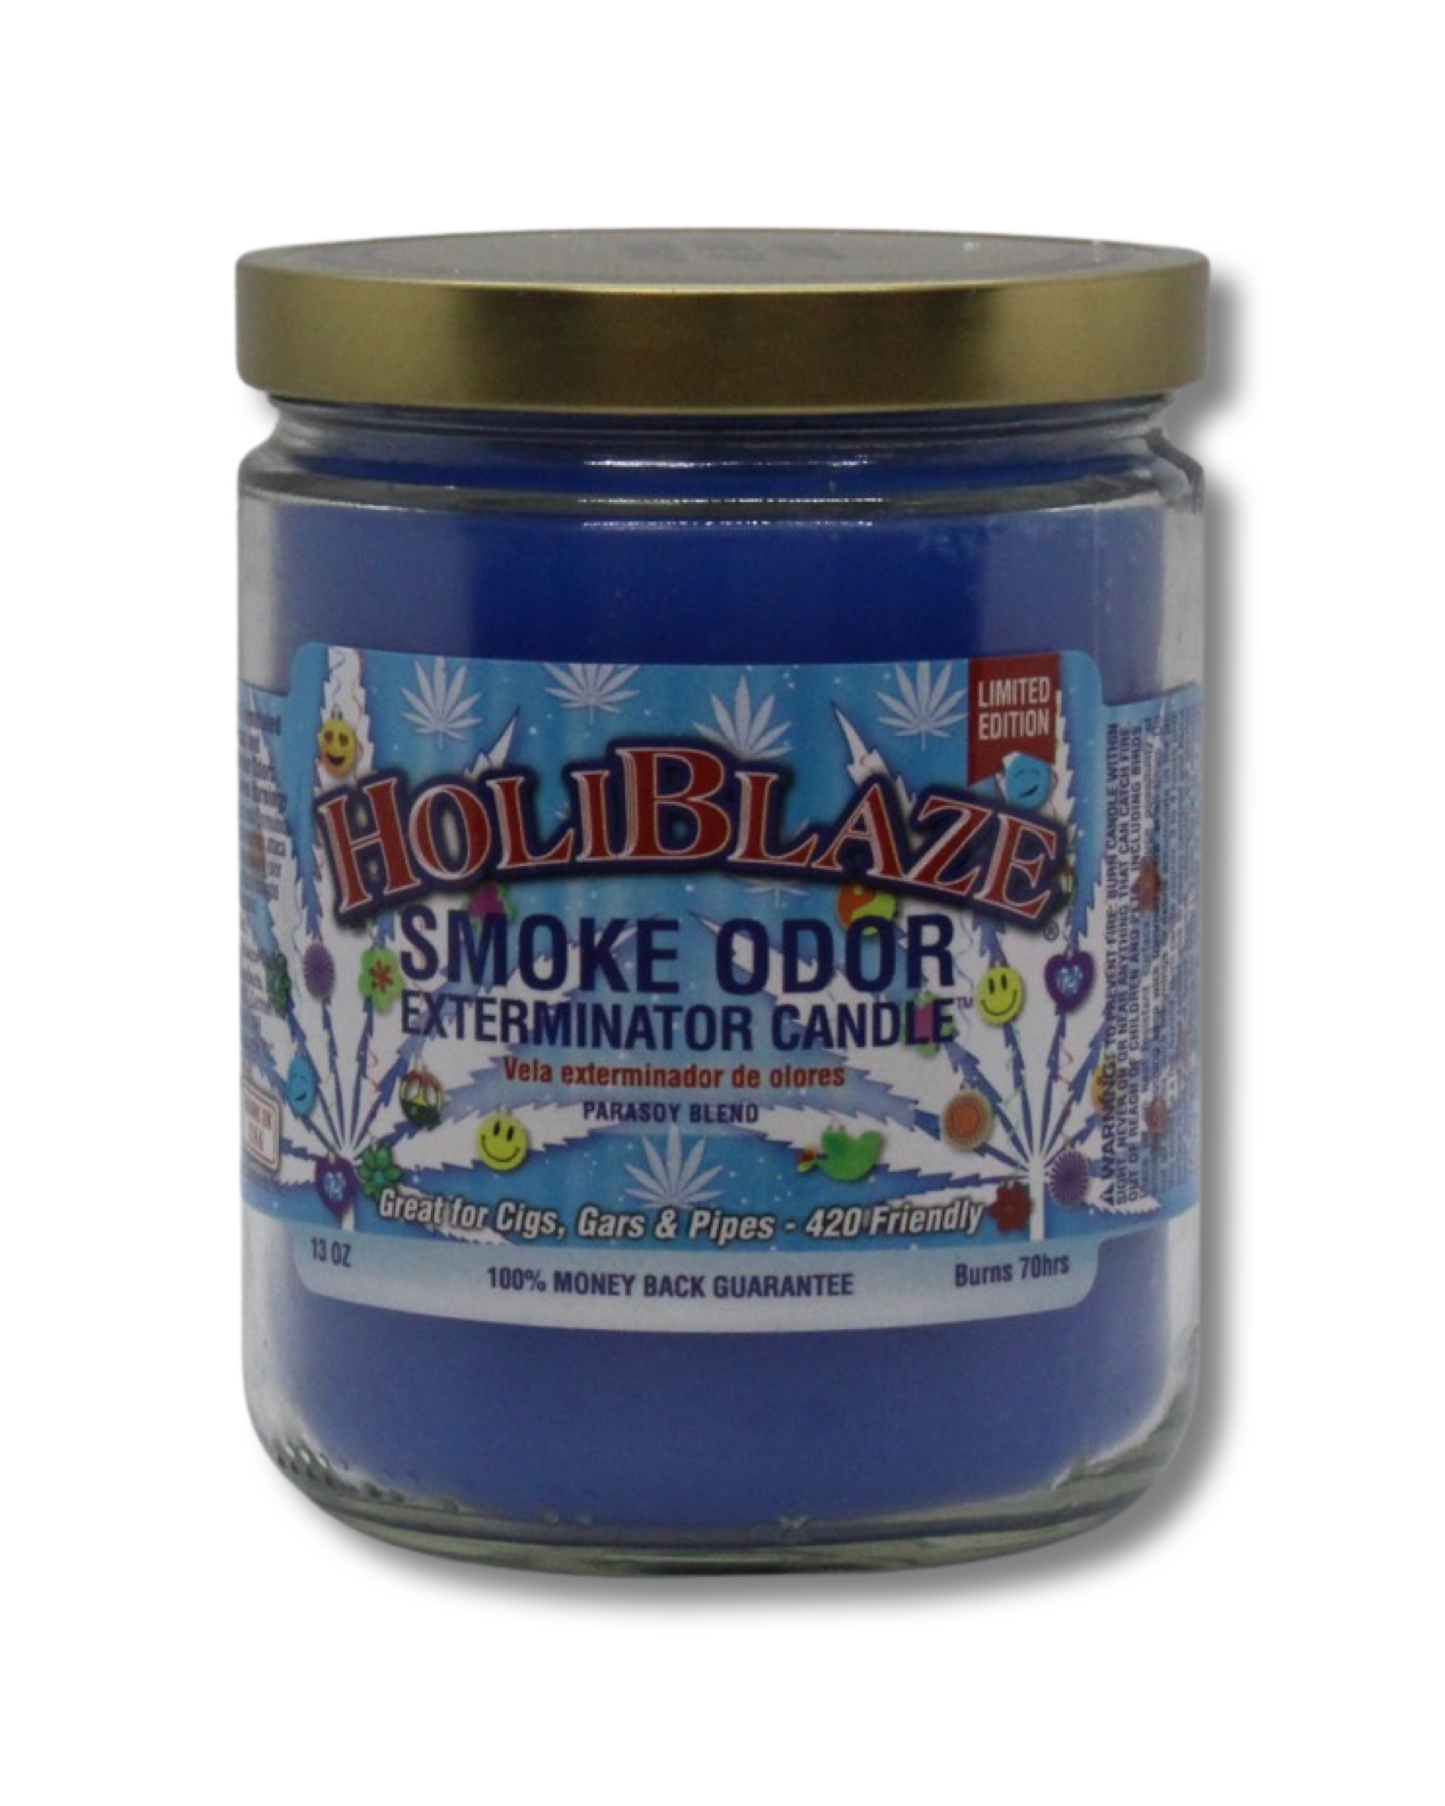 Smoke Odor Exterminator Candle Holiblaze